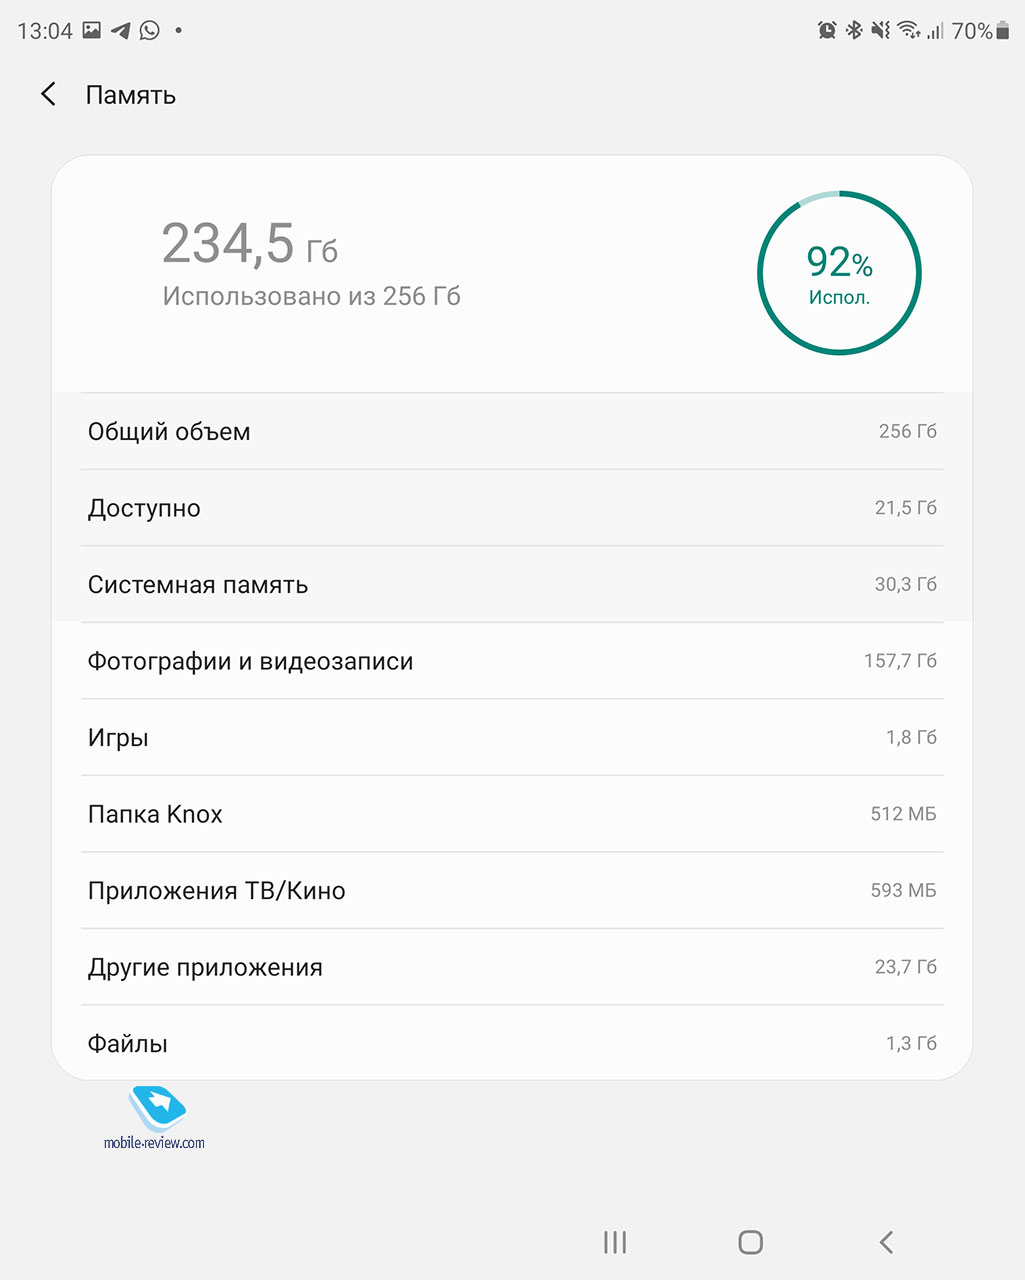 Как почистить телефон от мусора: инструкция для iOS и Android: Гаджеты: Наука и техника: autokoreazap.ru